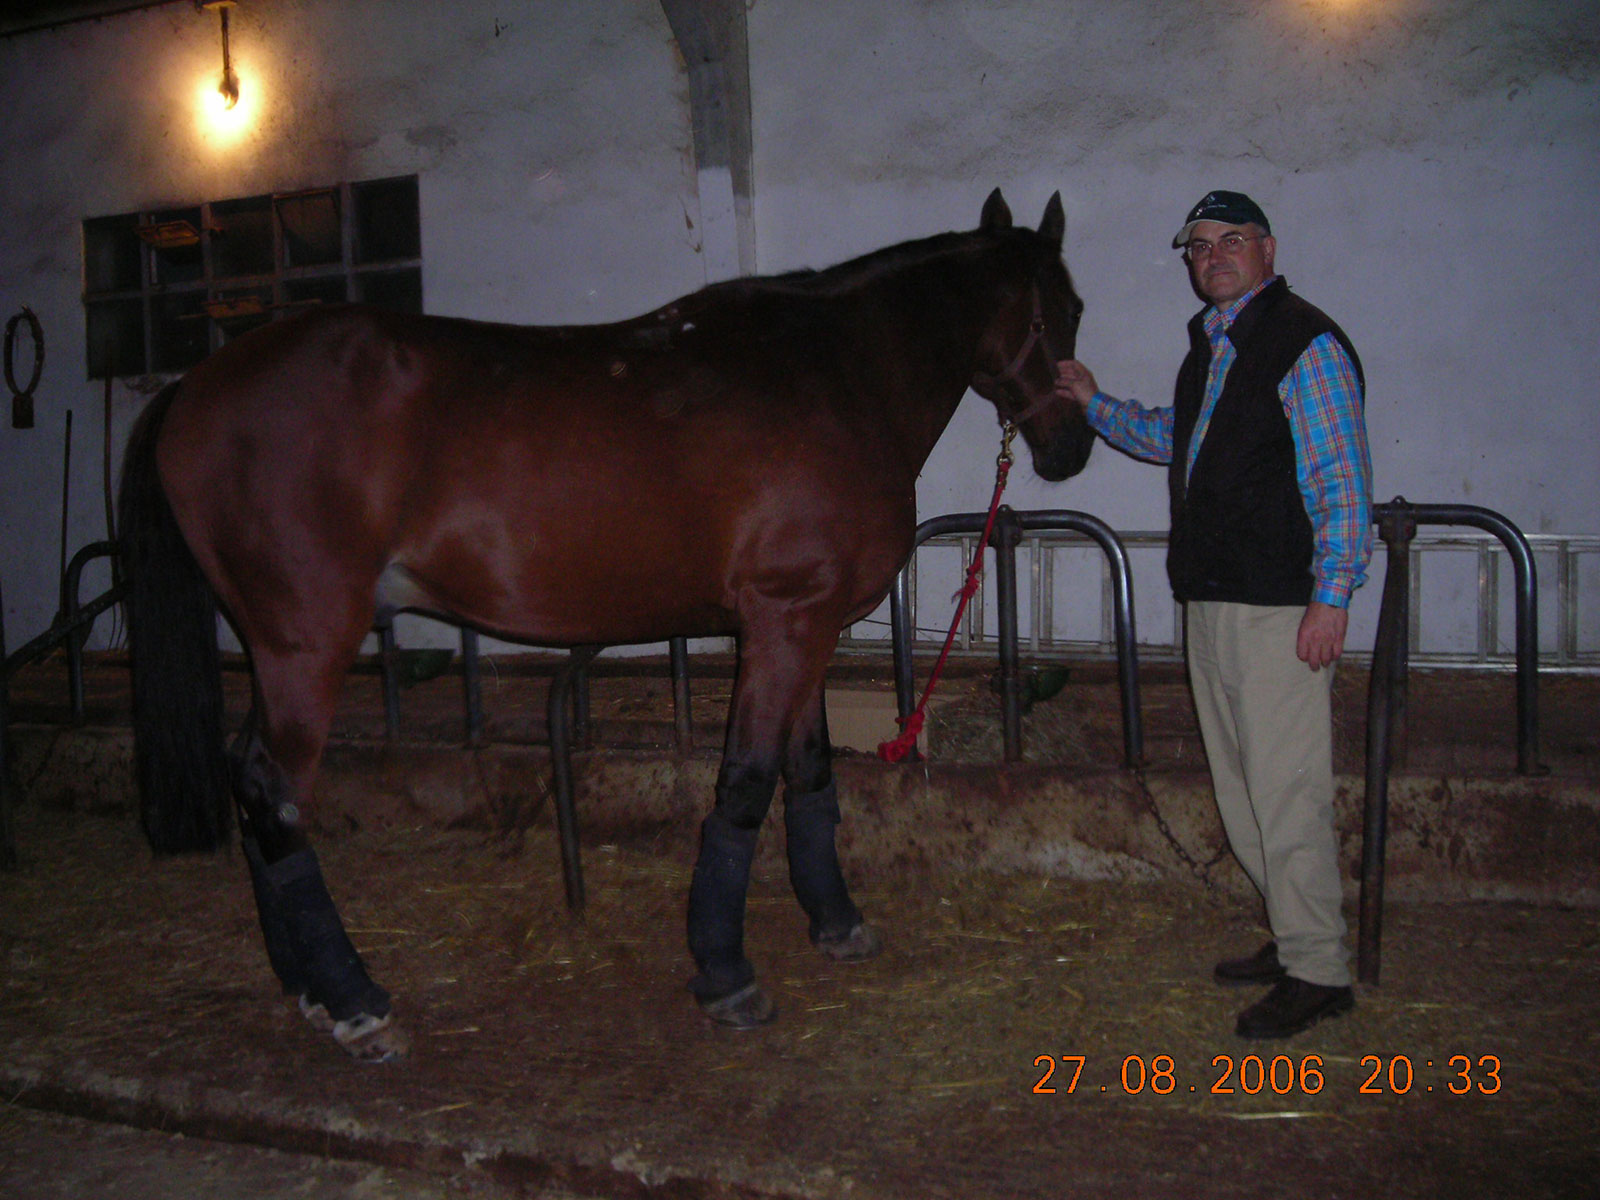 Spanish Equestrian Tourism Federation